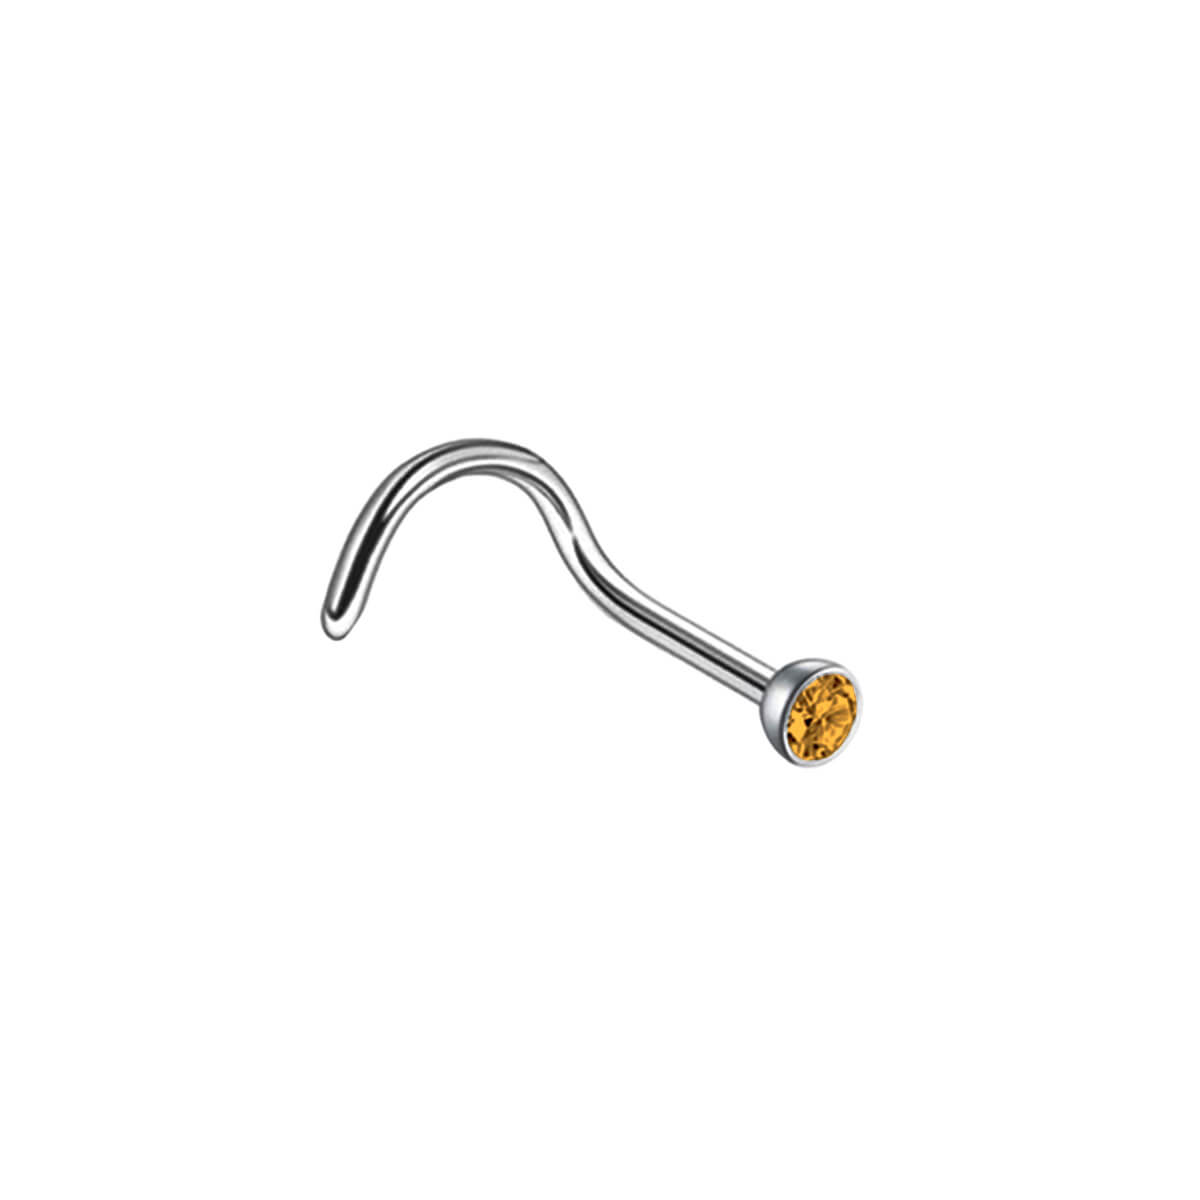 Bent nasal smycken konstgjord sätt 0,8 mm (stål 316L)